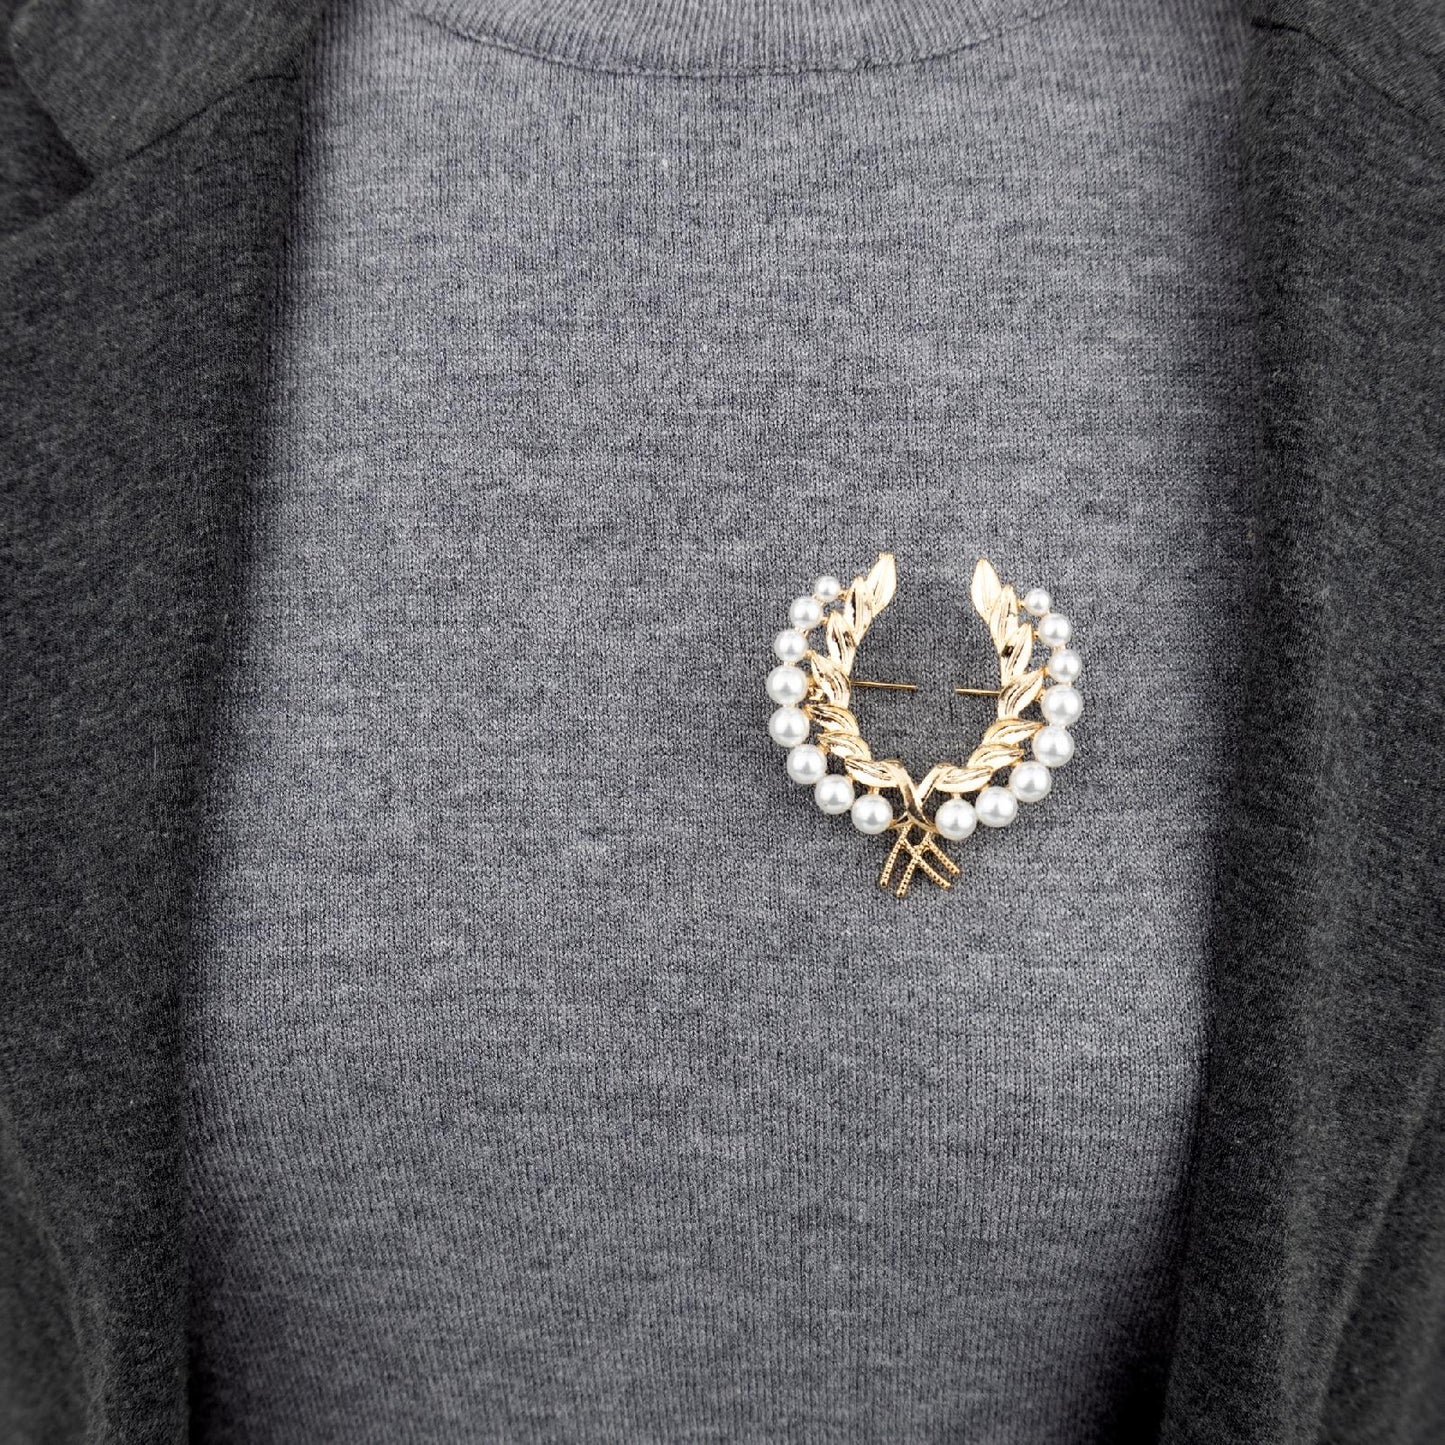 Wawrzyn - broszka w kształcie lauru olimpijskiego